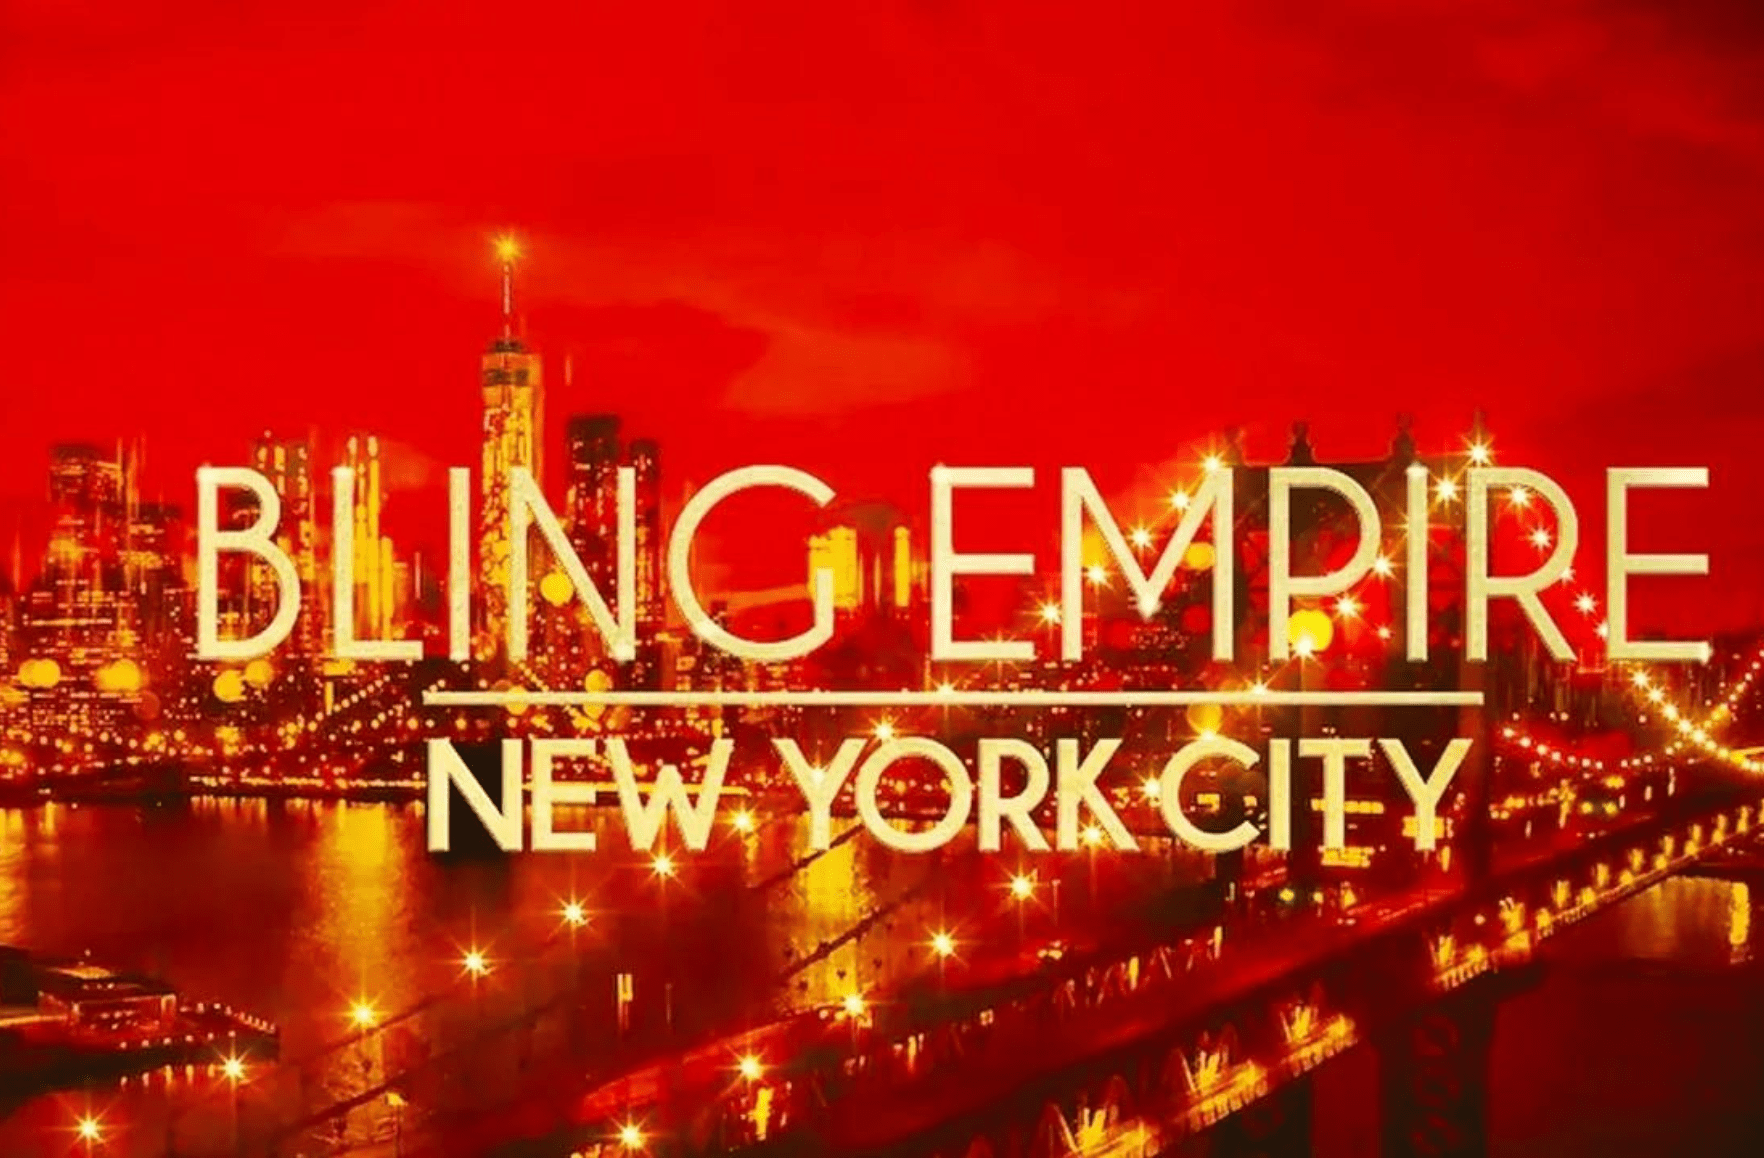 Bling Empire